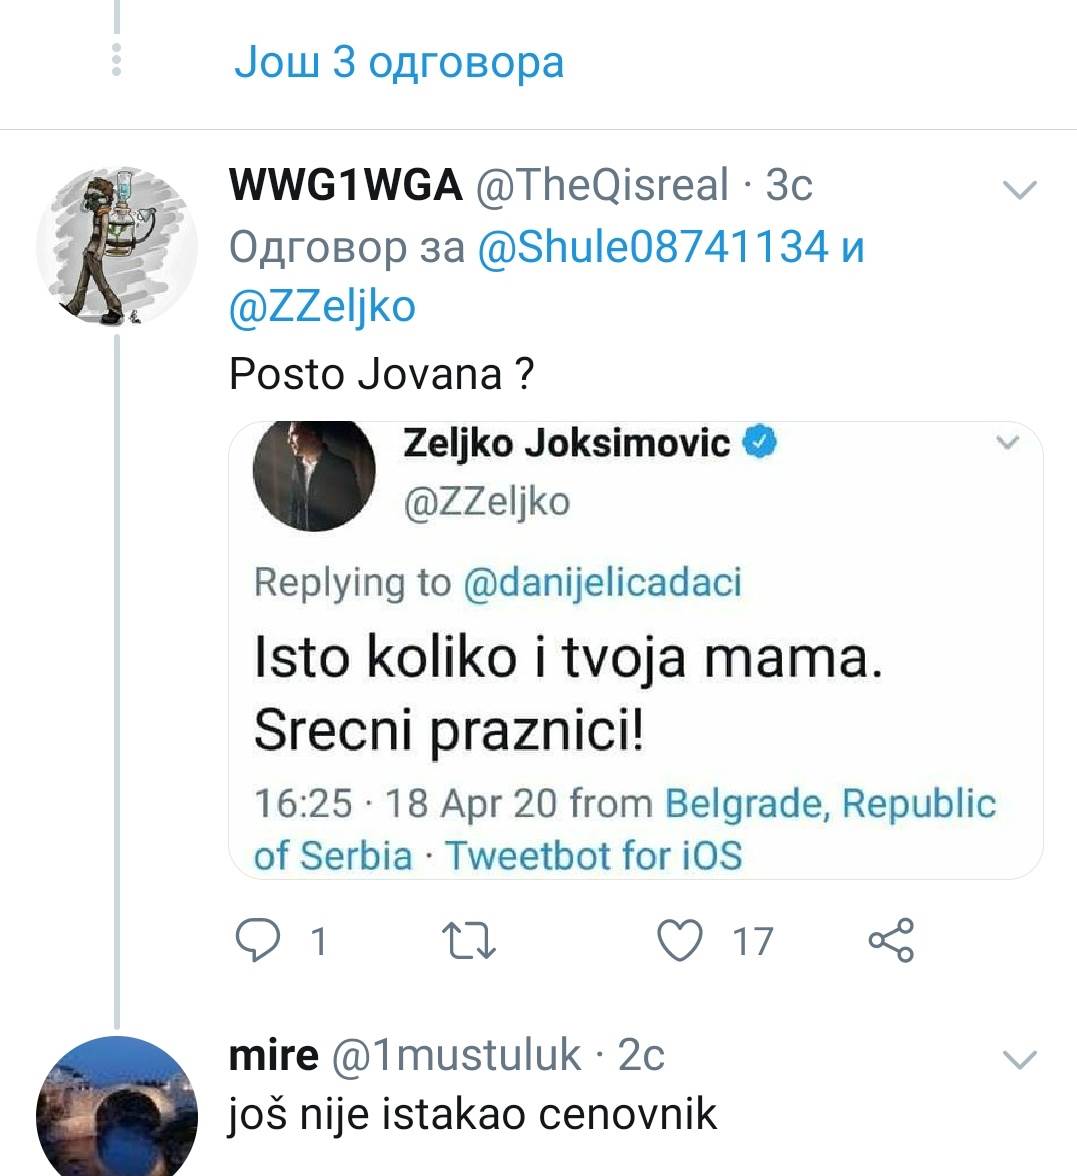  Željko Joksimović vređa na Tviteru 